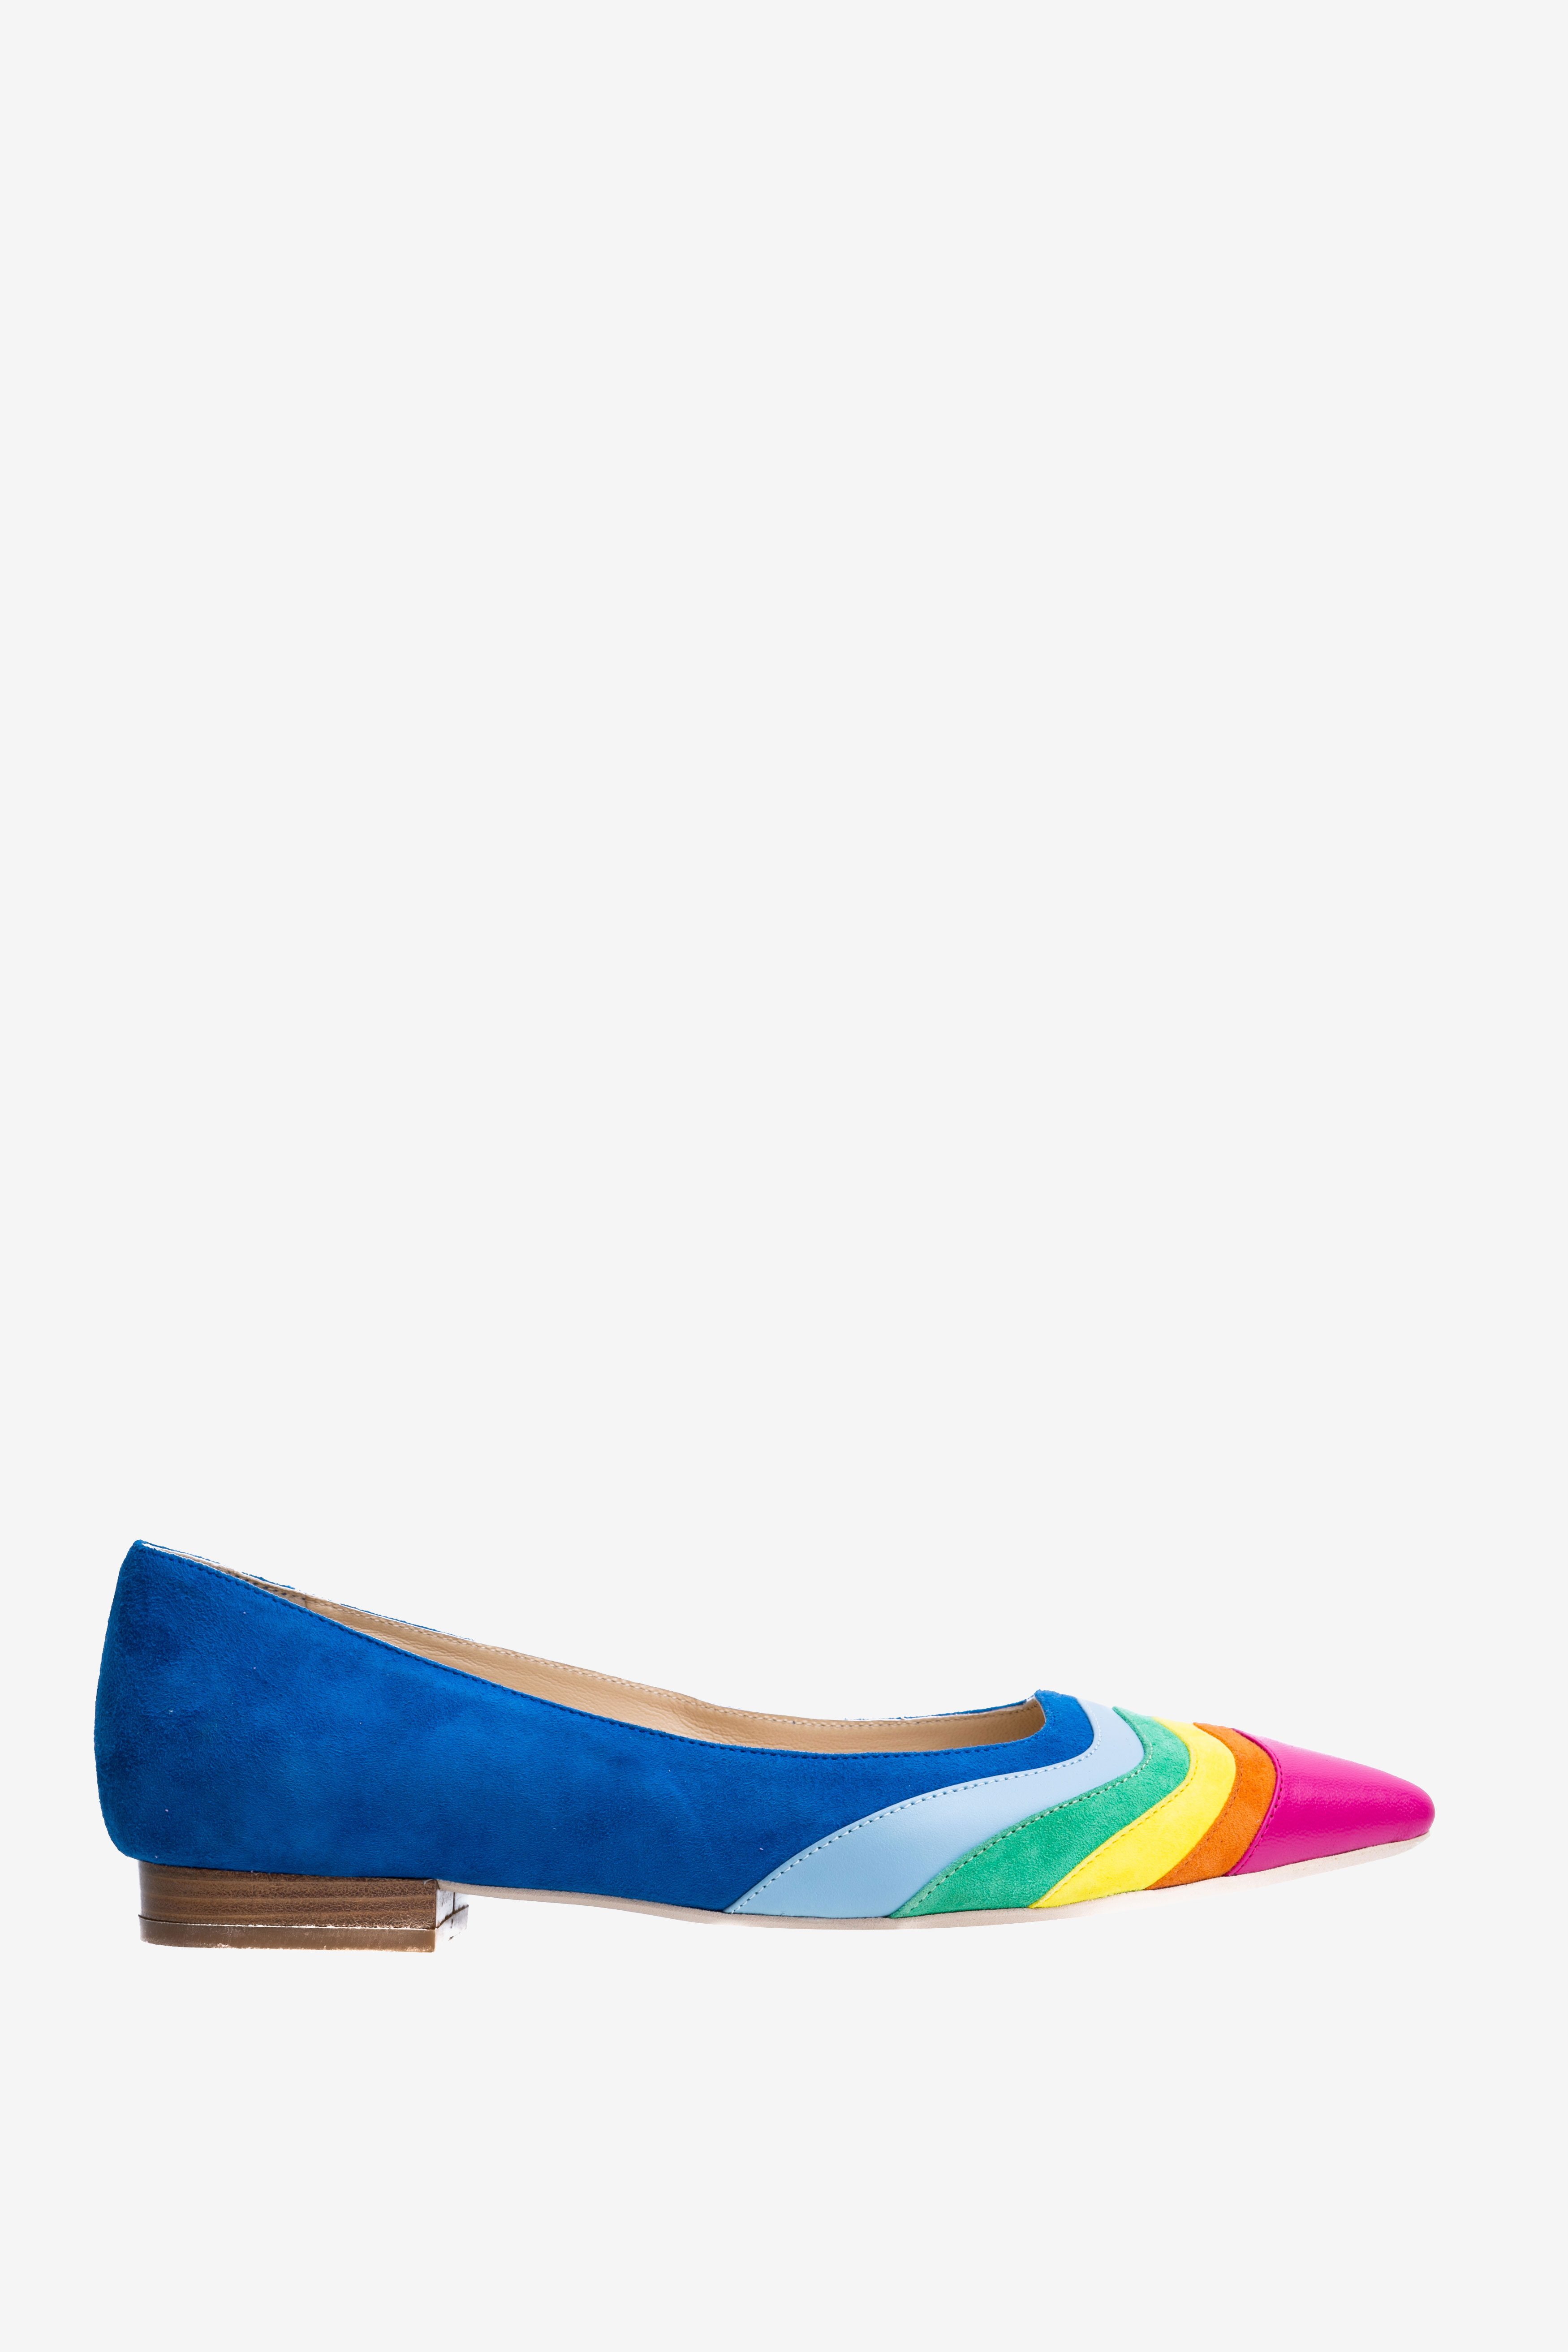 Pantofi multicolori cu varf ascutit Ginissima imagine 0